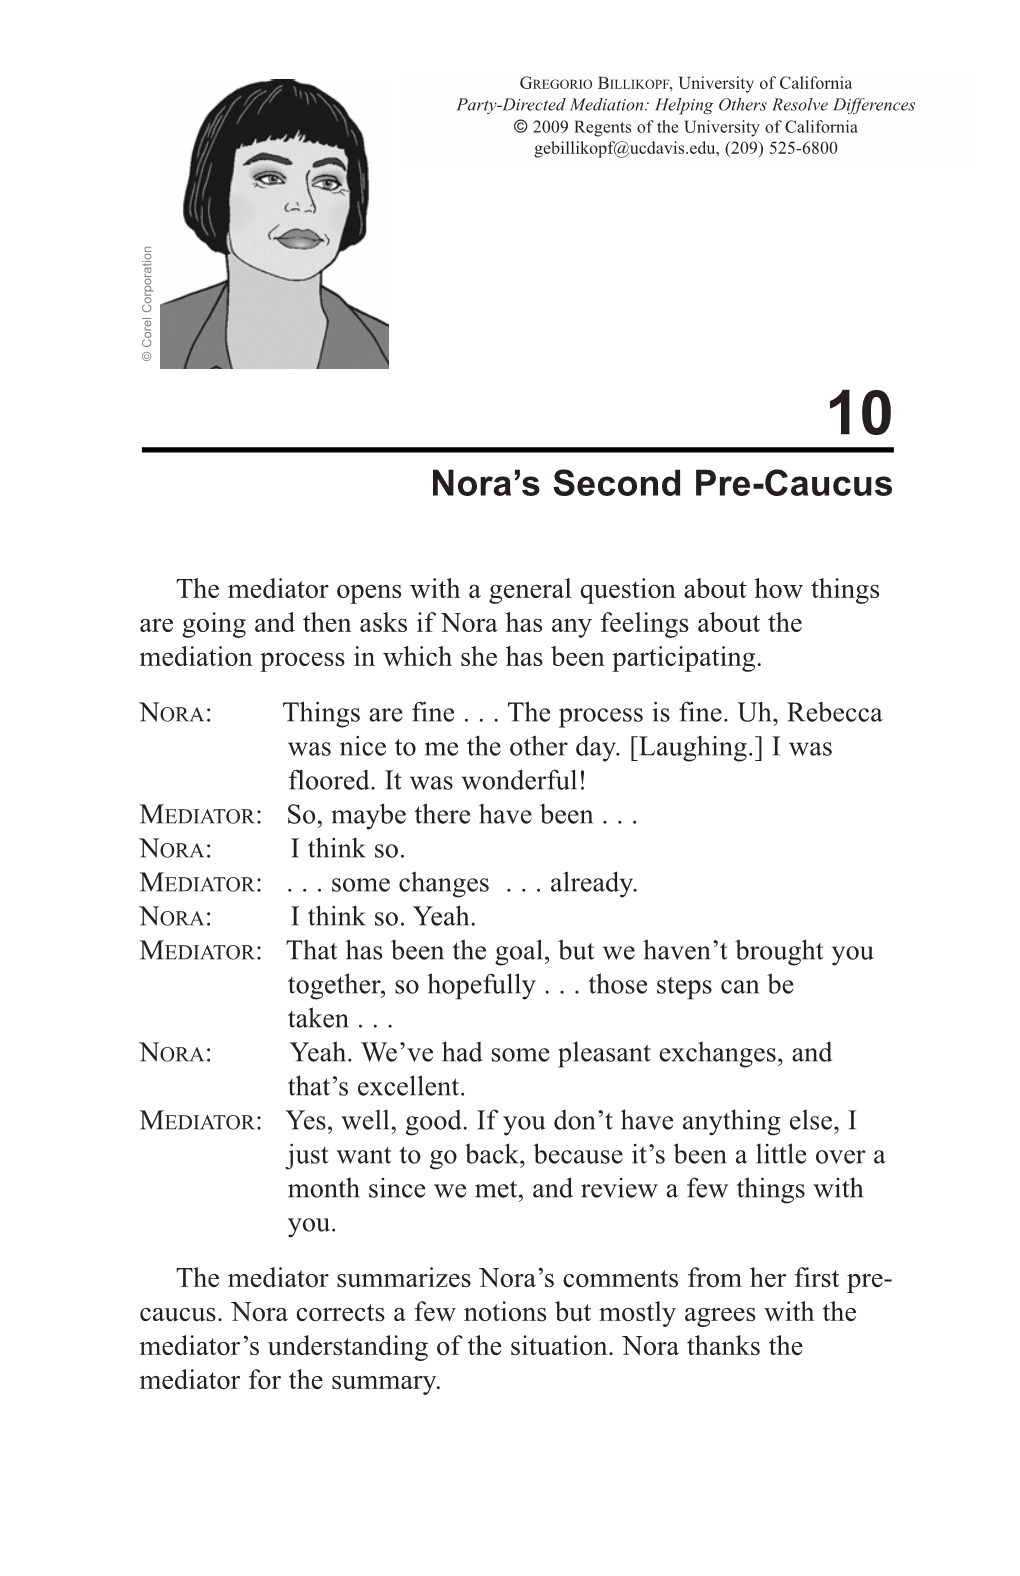 Nora's Second Pre-Caucus